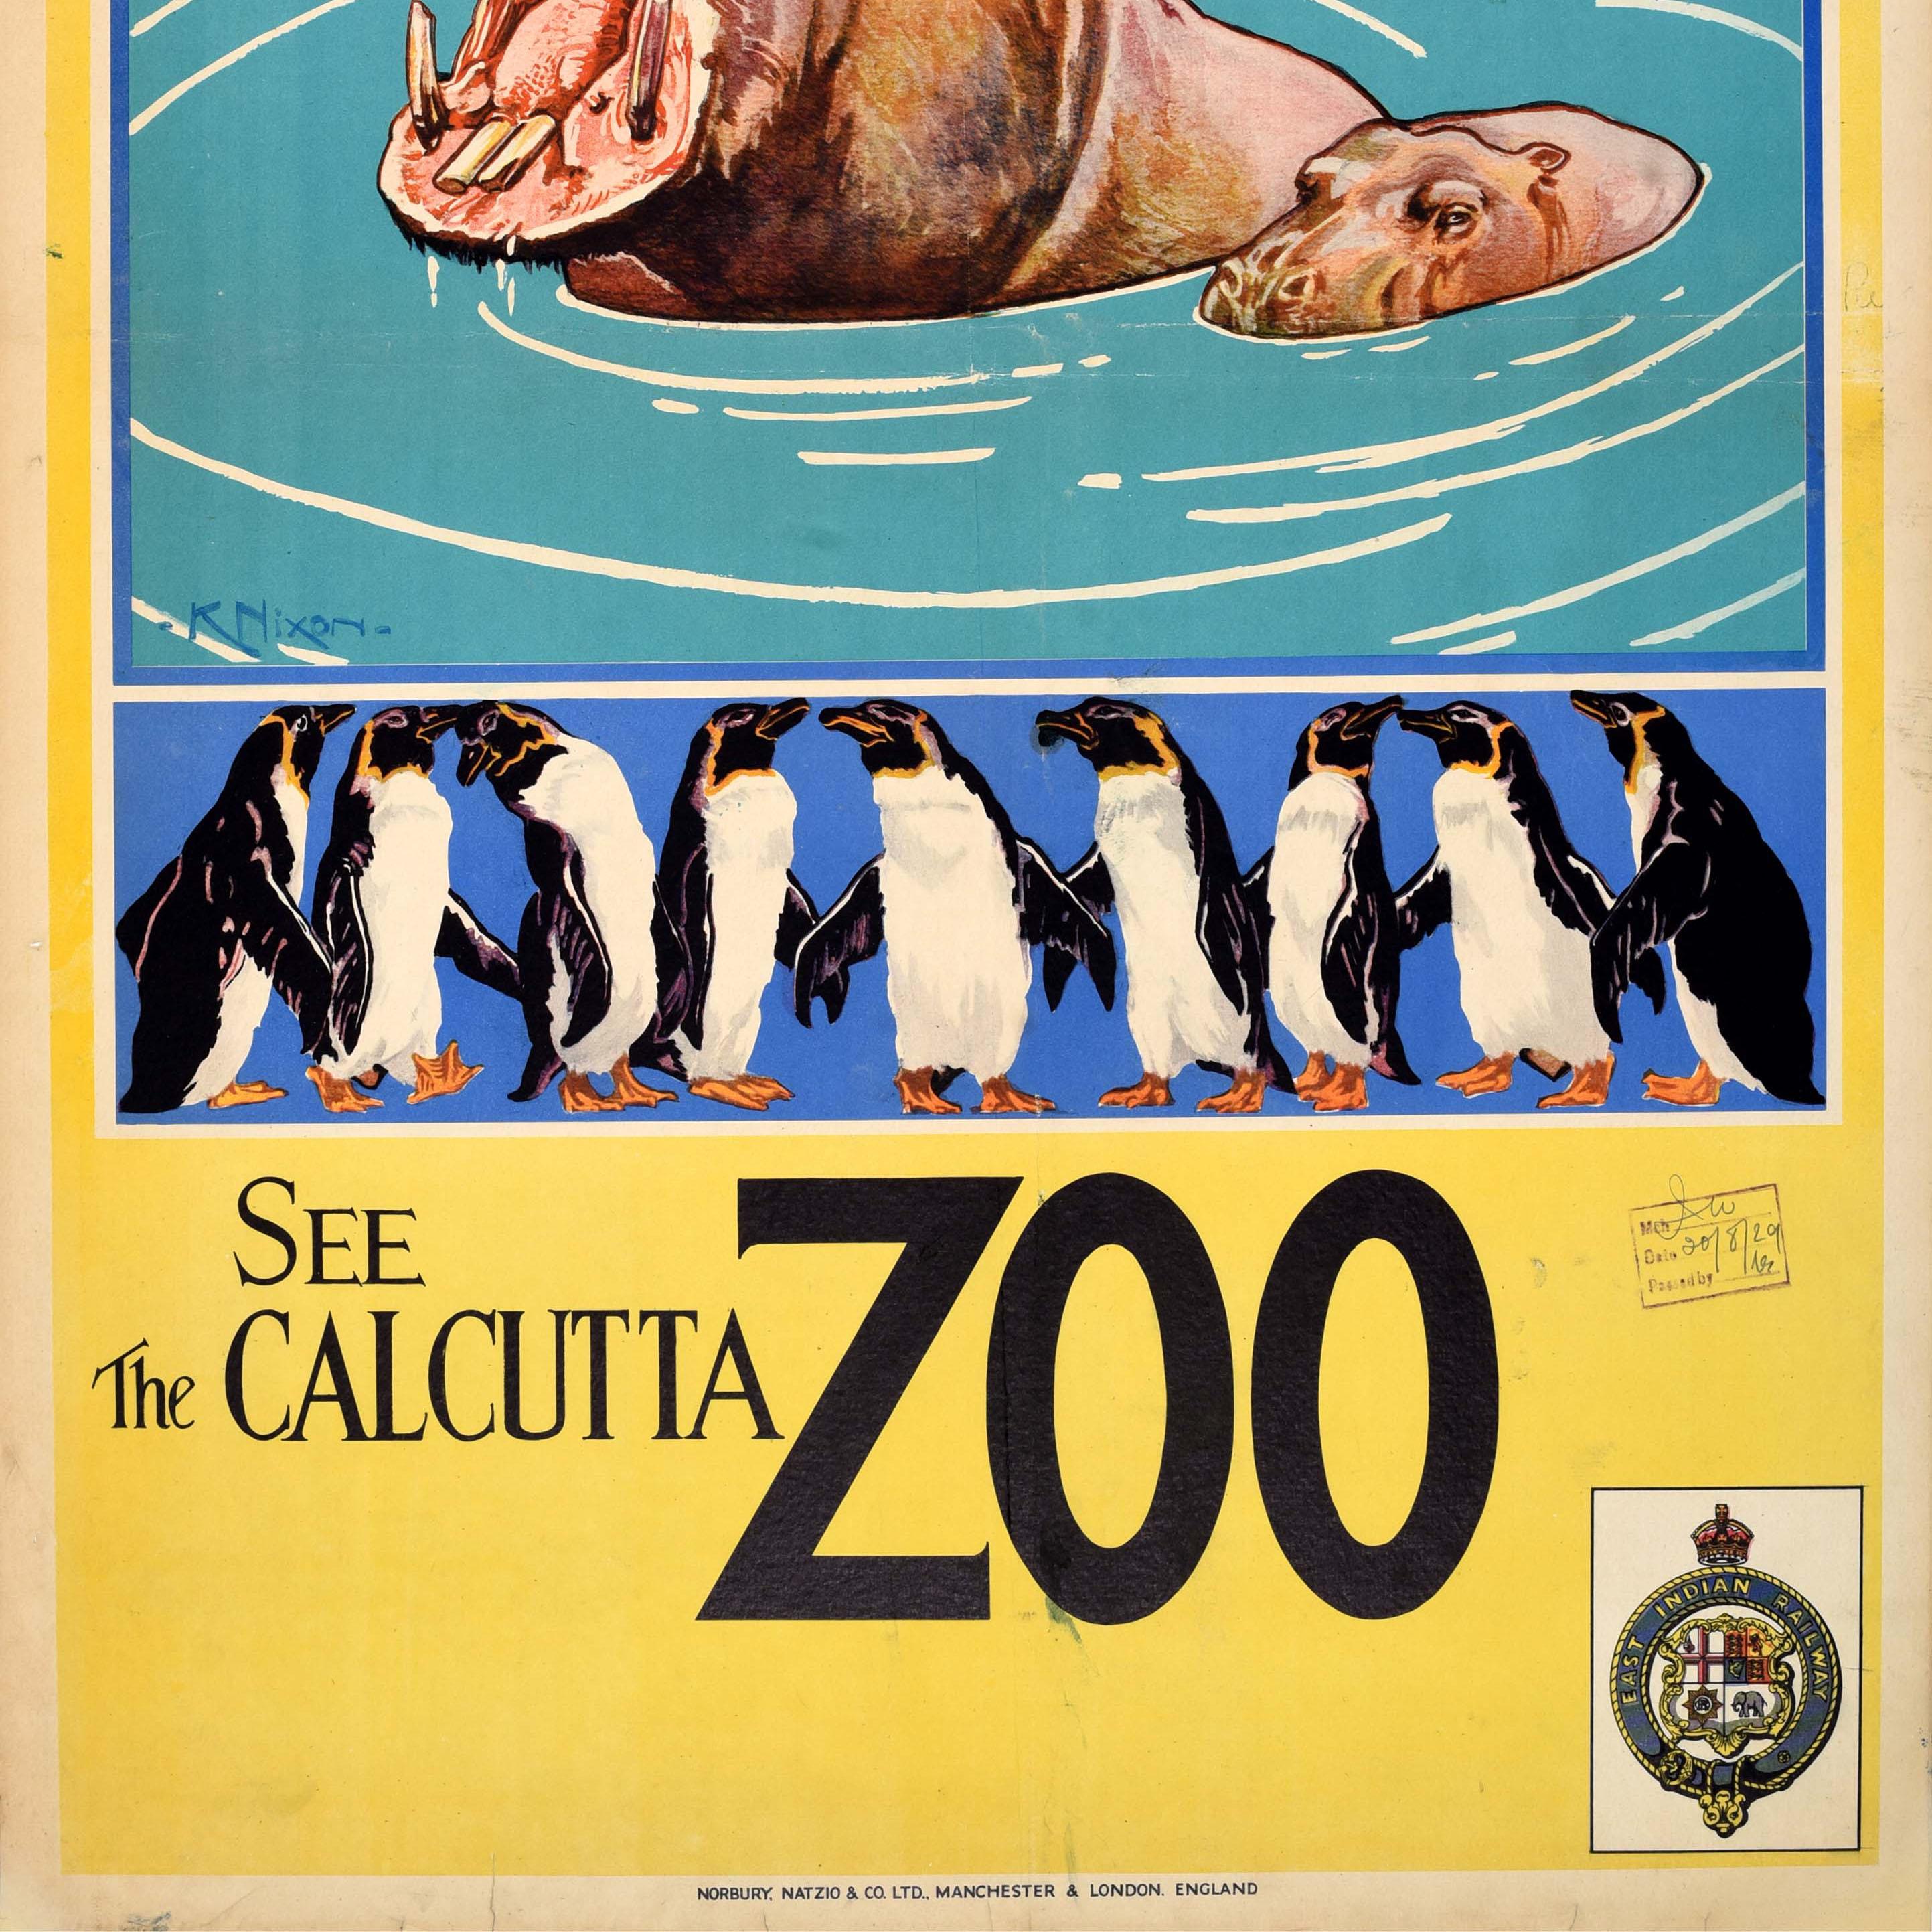 Original Vintage Asien-Reiseplakat, herausgegeben von der East Indian Railway (1845-1952) - See the Calcutta Zoo - mit einem großartigen Design von Kay Nixon (Kathleen Irene Nixon; 1895-1988) eines Nilpferd-Muttertiers mit weit geöffnetem Maul im